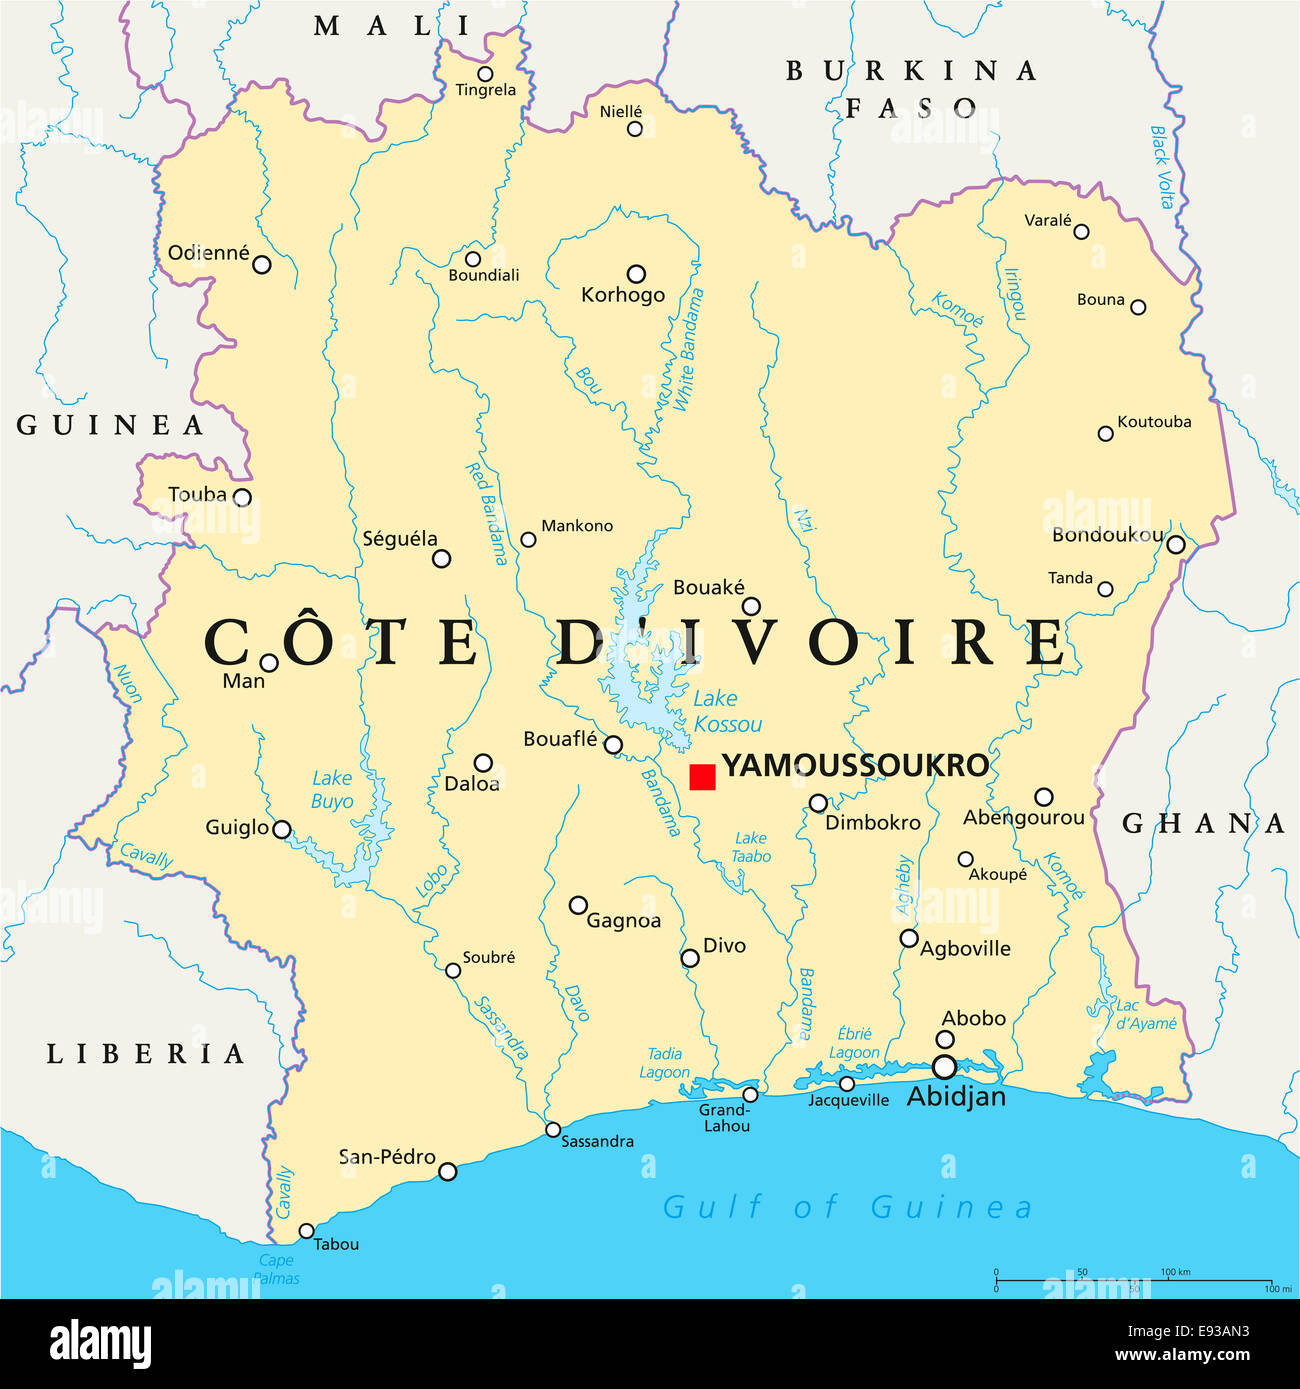 Carte Politique de la Côte d'Ivoire  Côte d'Ivoire  Yamoussoukro